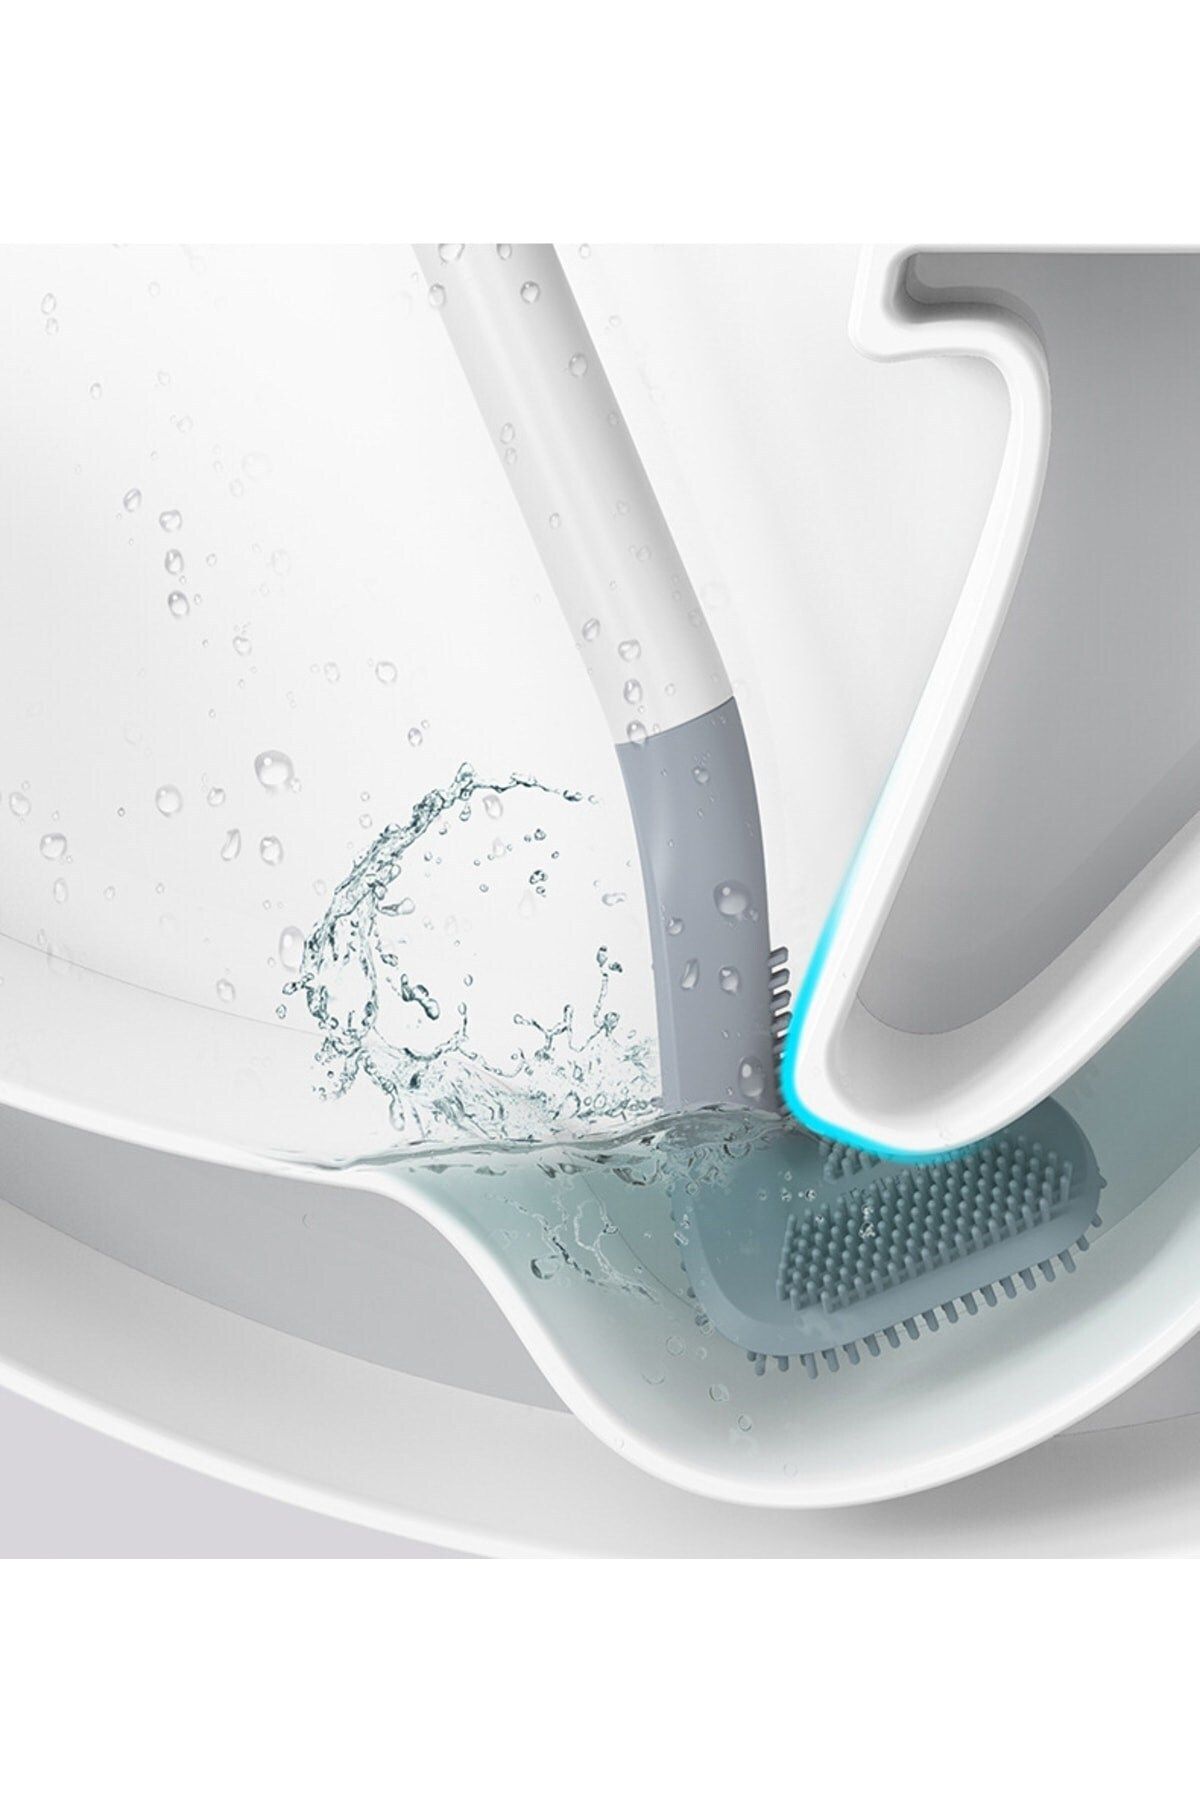 Sas Haus Golf Tasarımlı Silikon WC Klozet Mutfak Temizlik Fırçası Kanca Hediyeli